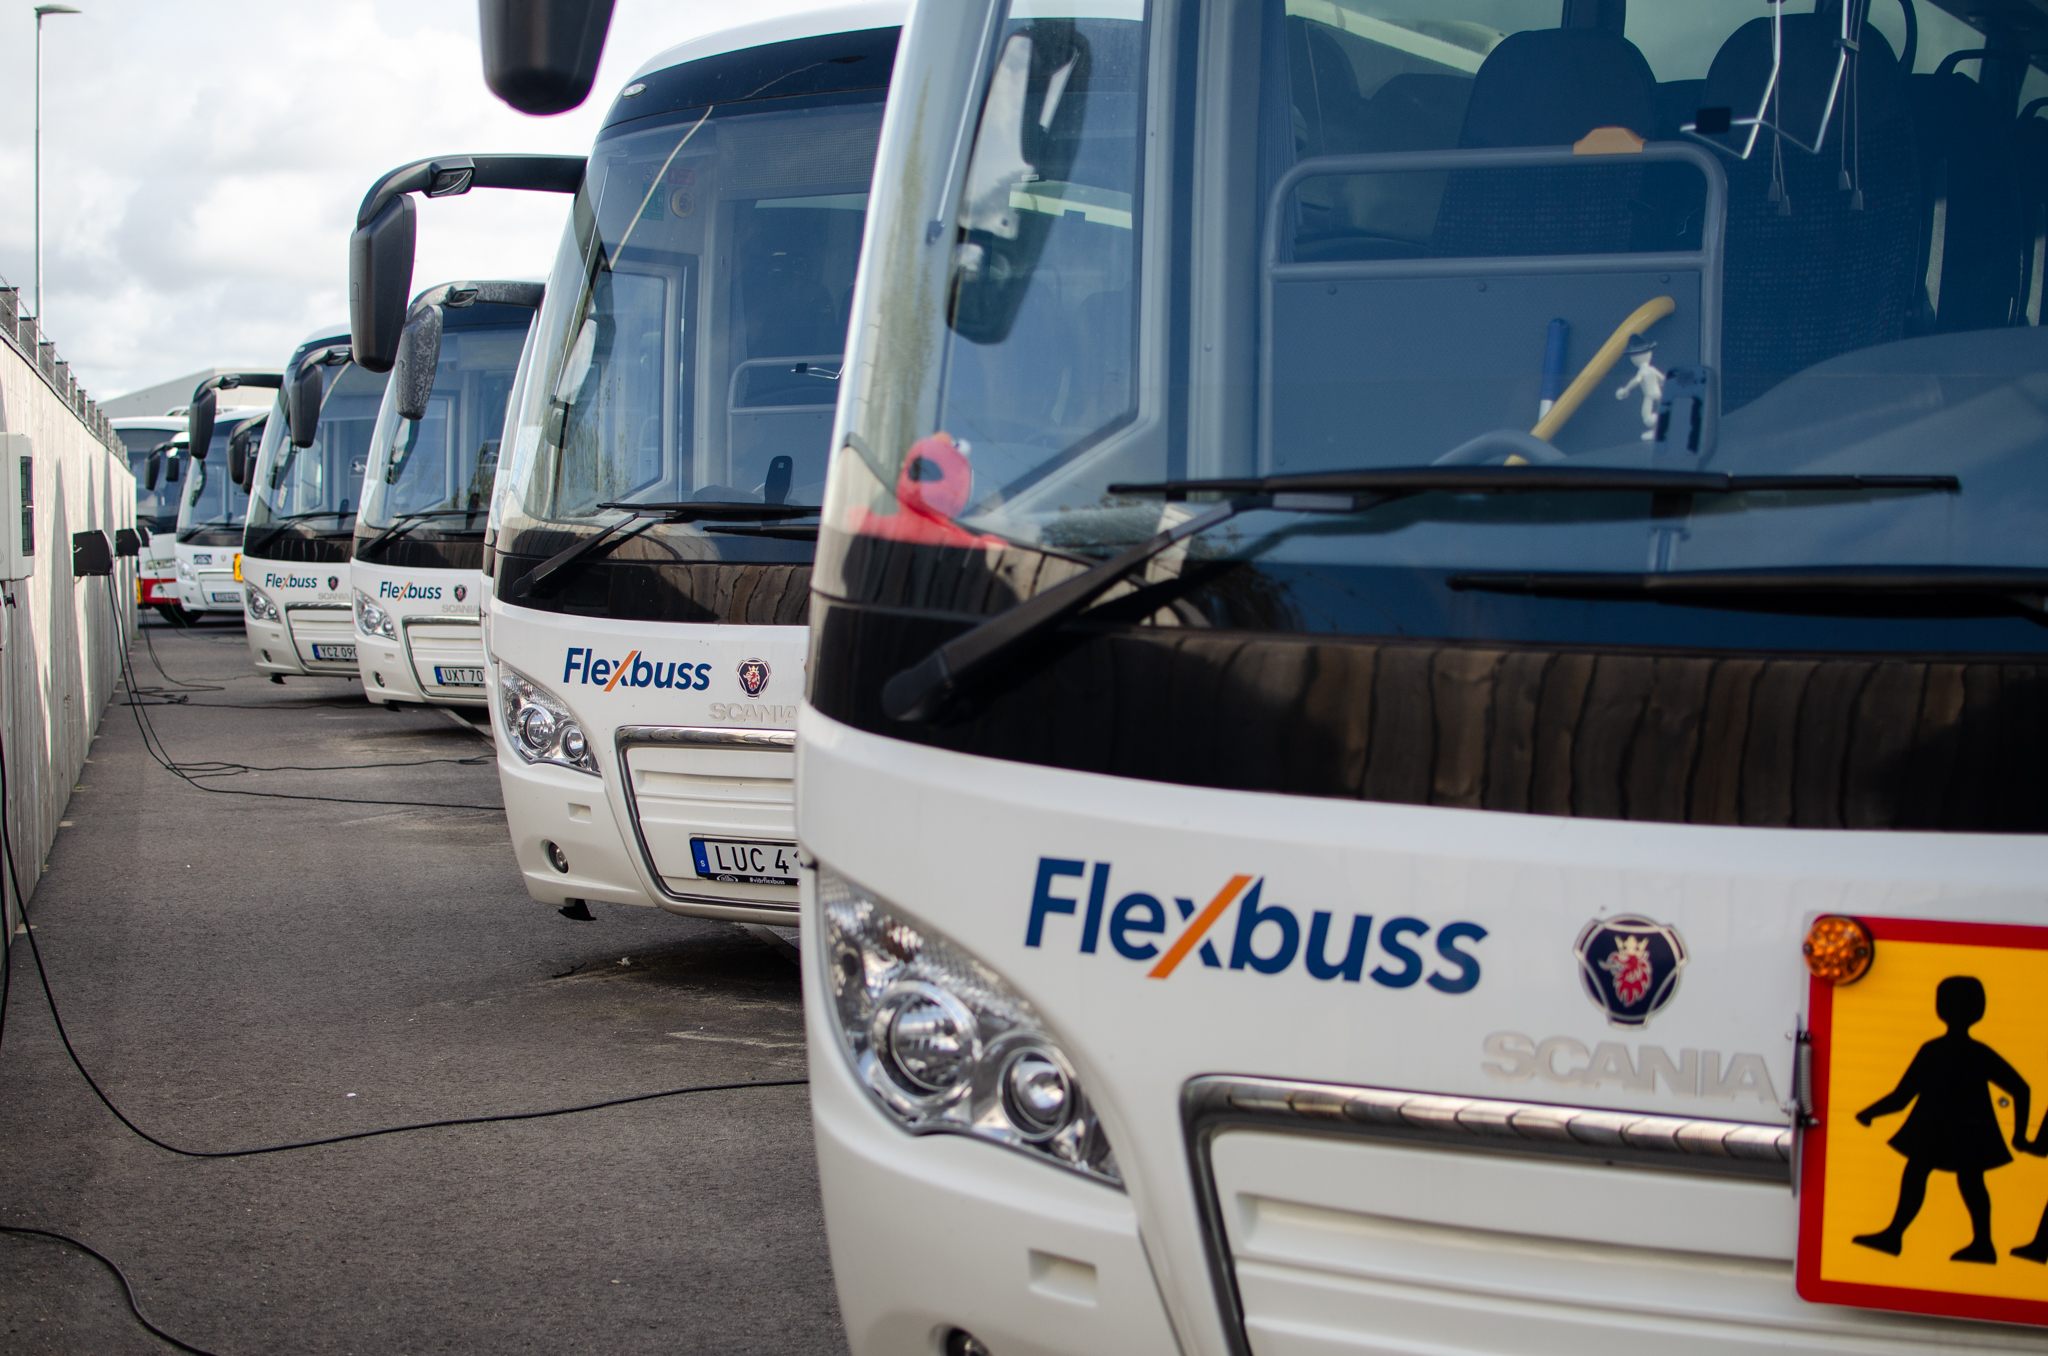 Flexbuss vinner tilldelning för Kalmar Länstrafik